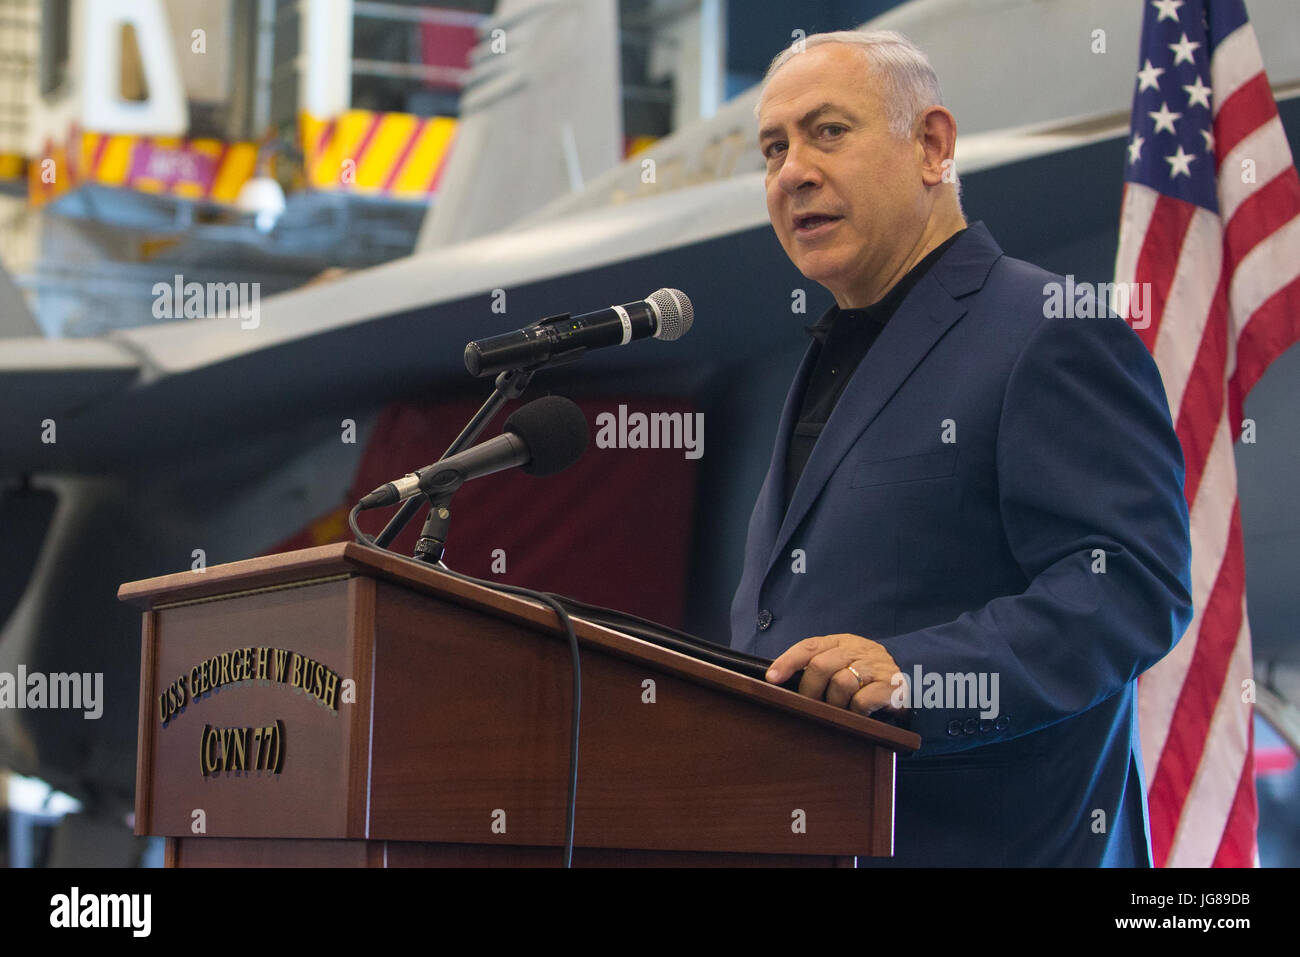 Haïfa, Israël. 3 juillet, 2017. Le Premier ministre israélien Benjamin Netanyahu prononce une allocution à bord du porte-avions américain USS George H. W. Bush lors de sa visite en Israël, Haifa port, le 3 juillet 2017. Source : Xinhua/Alamy Live News Banque D'Images